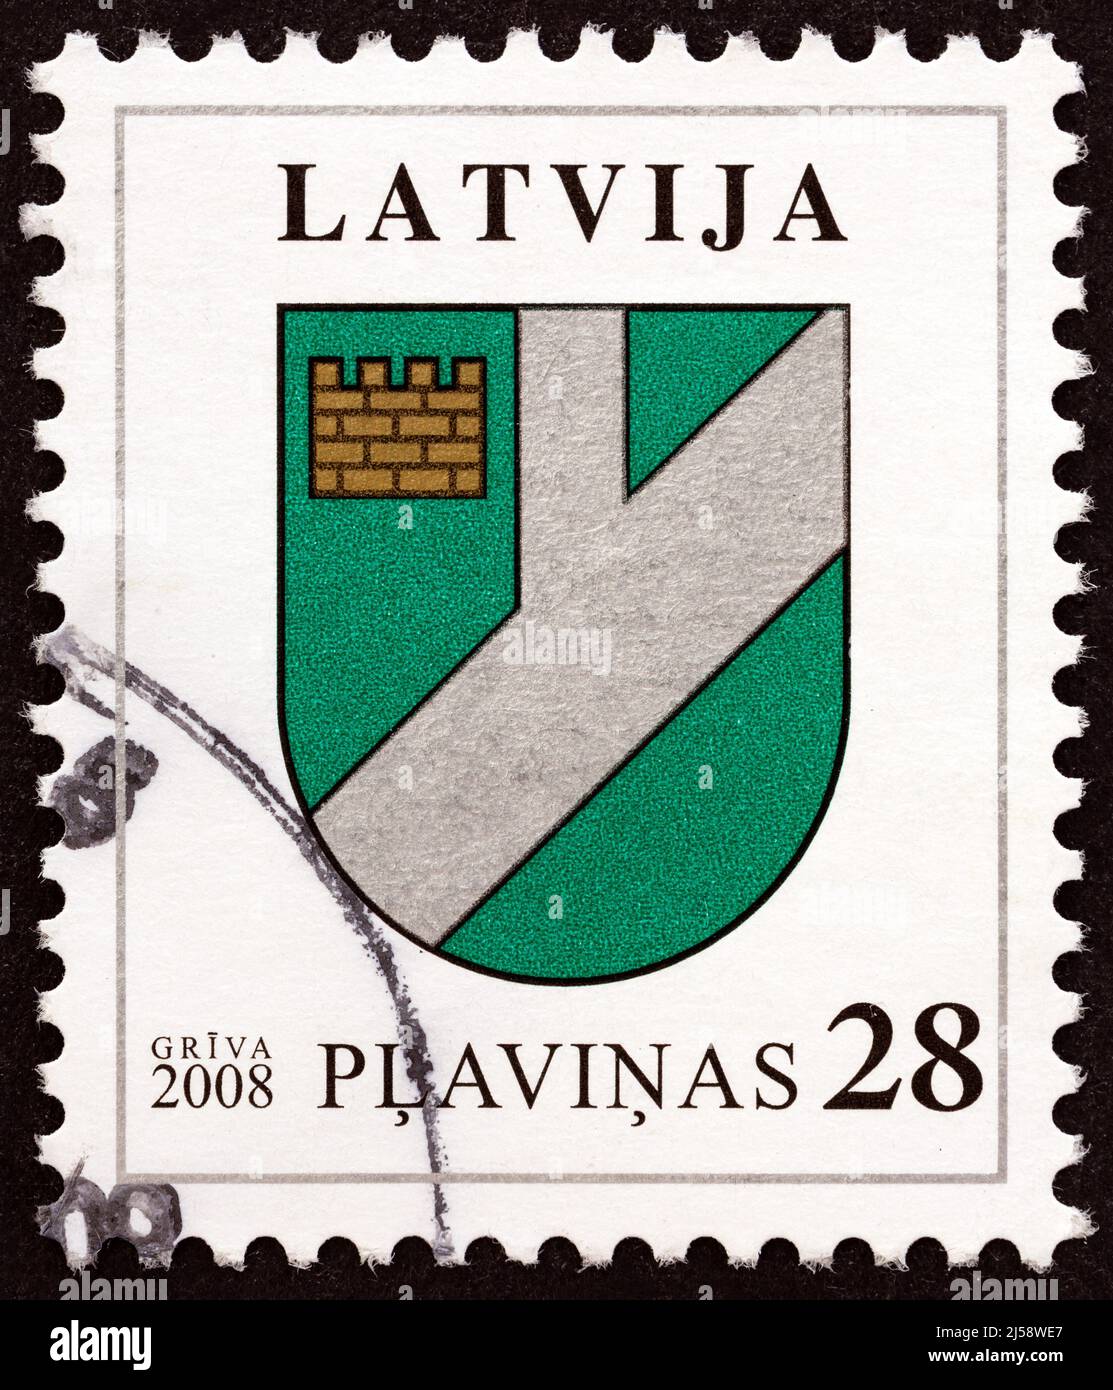 LETTLAND - UM 2008: Eine in Lettland gedruckte Briefmarke aus der Ausgabe 'Wappen' zeigt das Wappen von Plavinas, um 2008. Stockfoto